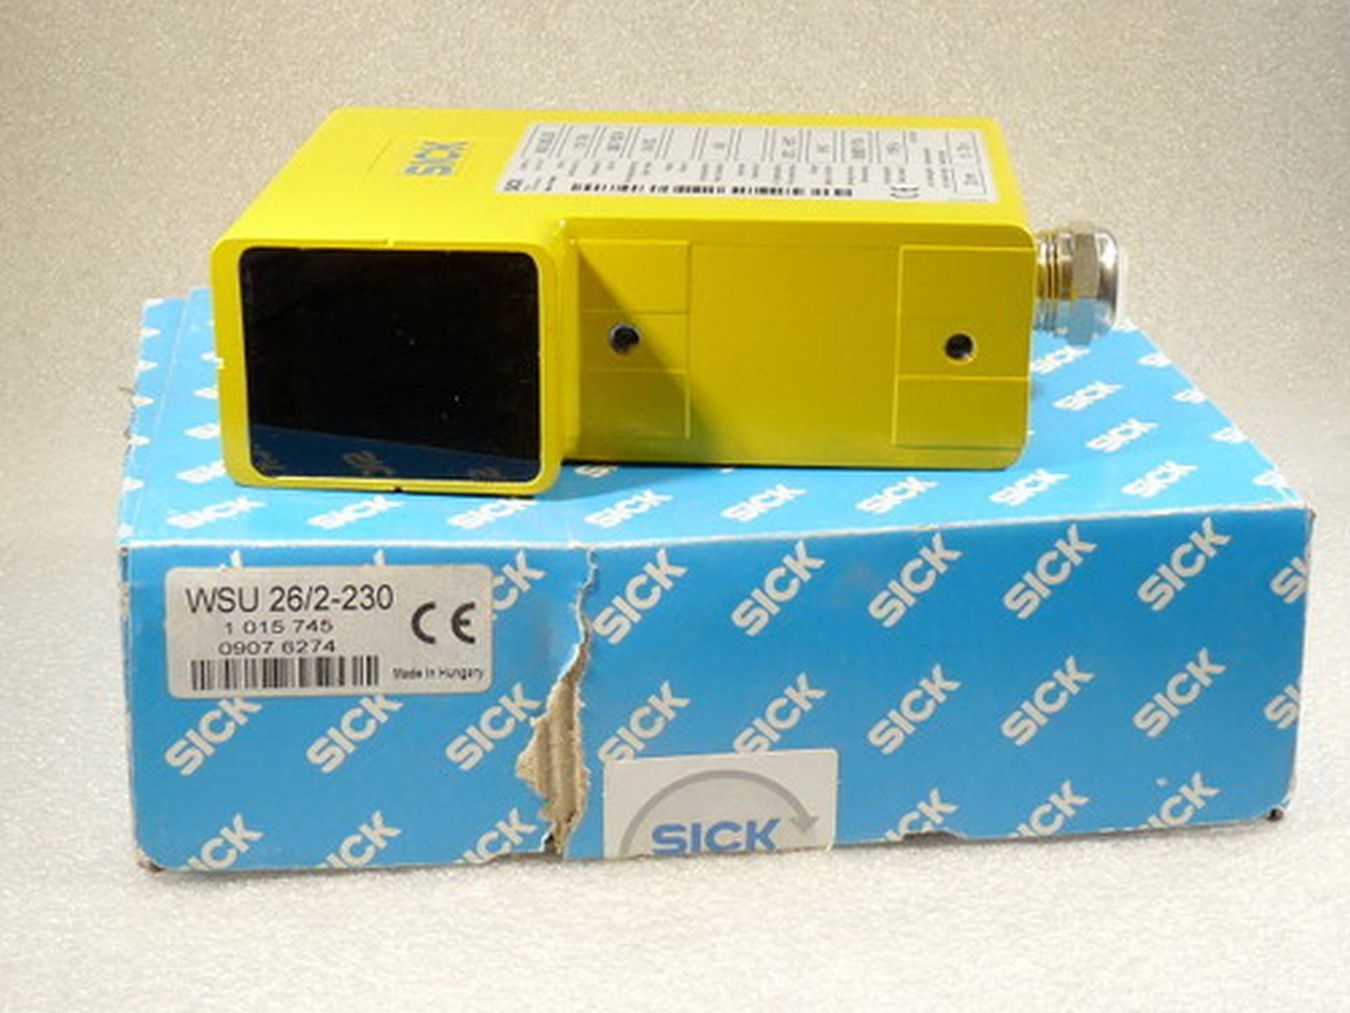 Sick WSU 26/2-230 Sicherheits Lichtschranke Art Nr 1015 745  2-230,施克,PLC